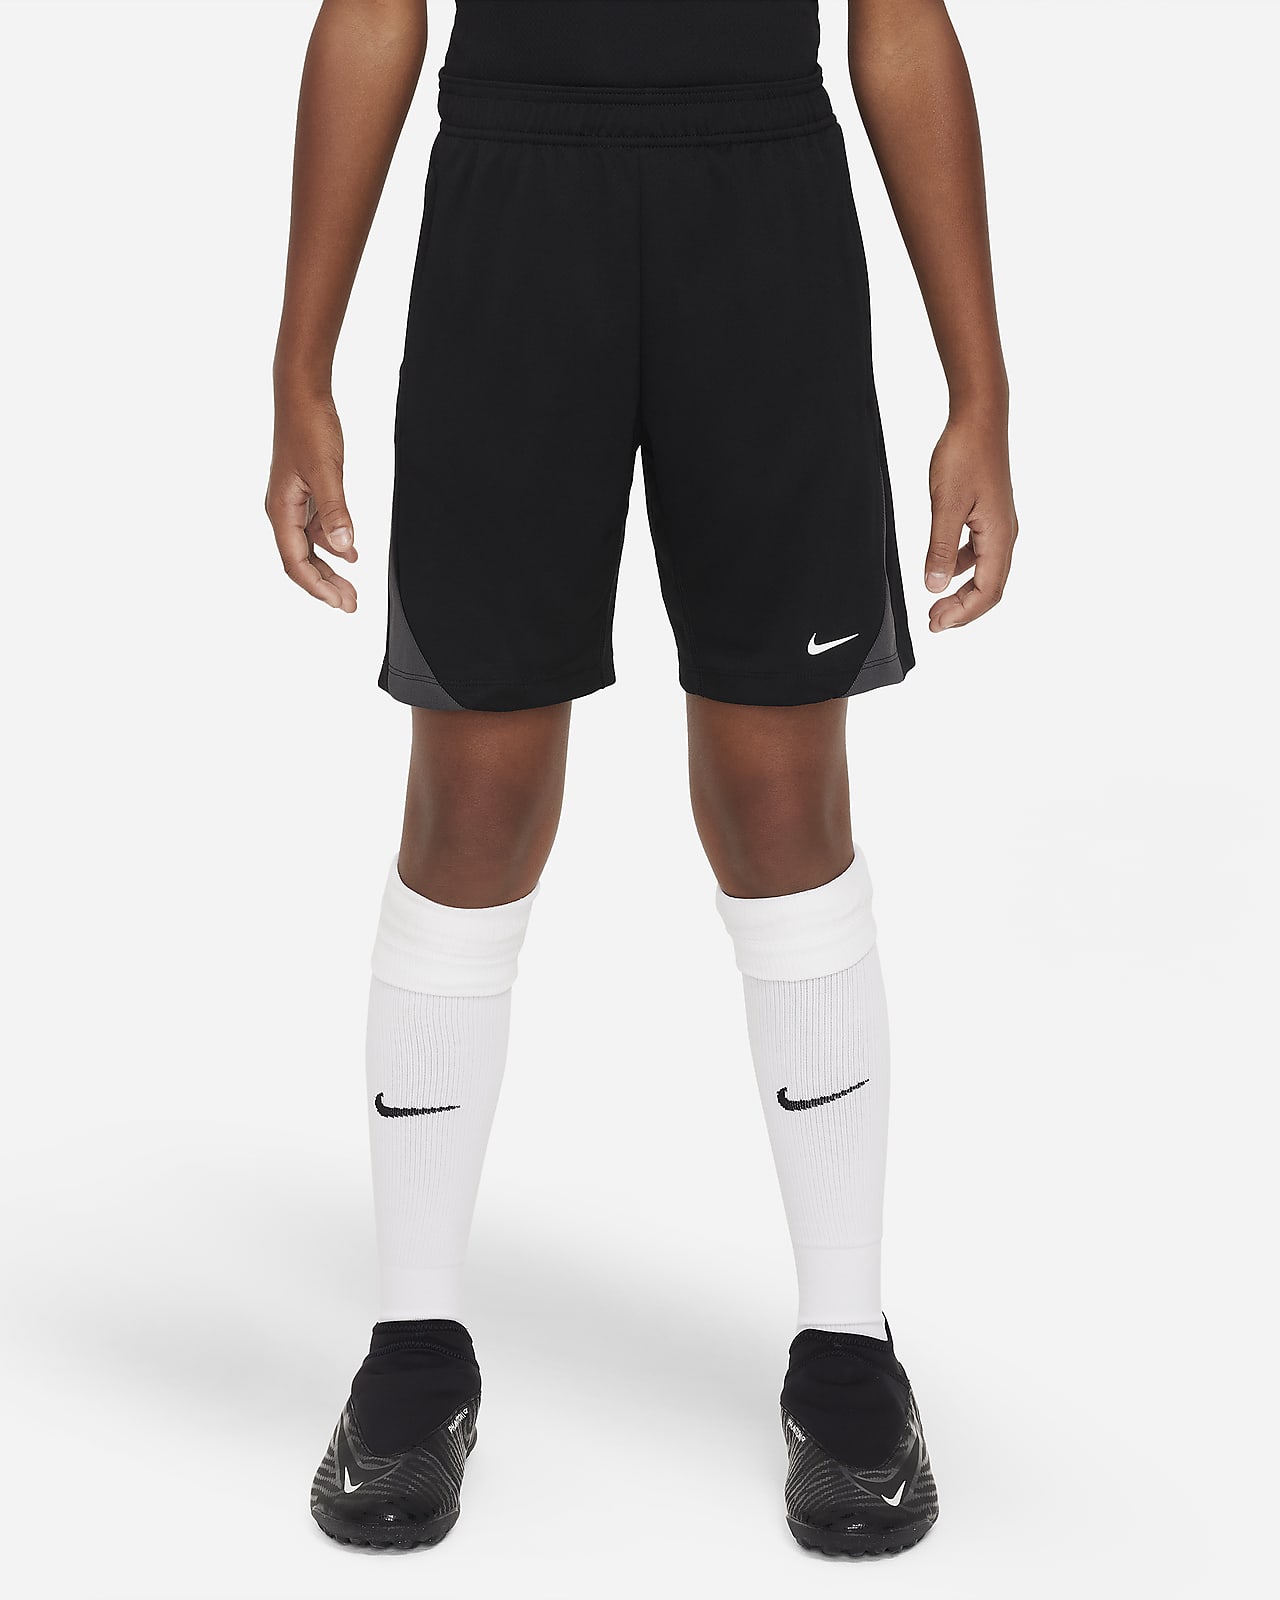 Nike Dri-FIT Strike Pantalons curts de futbol - Nen/a